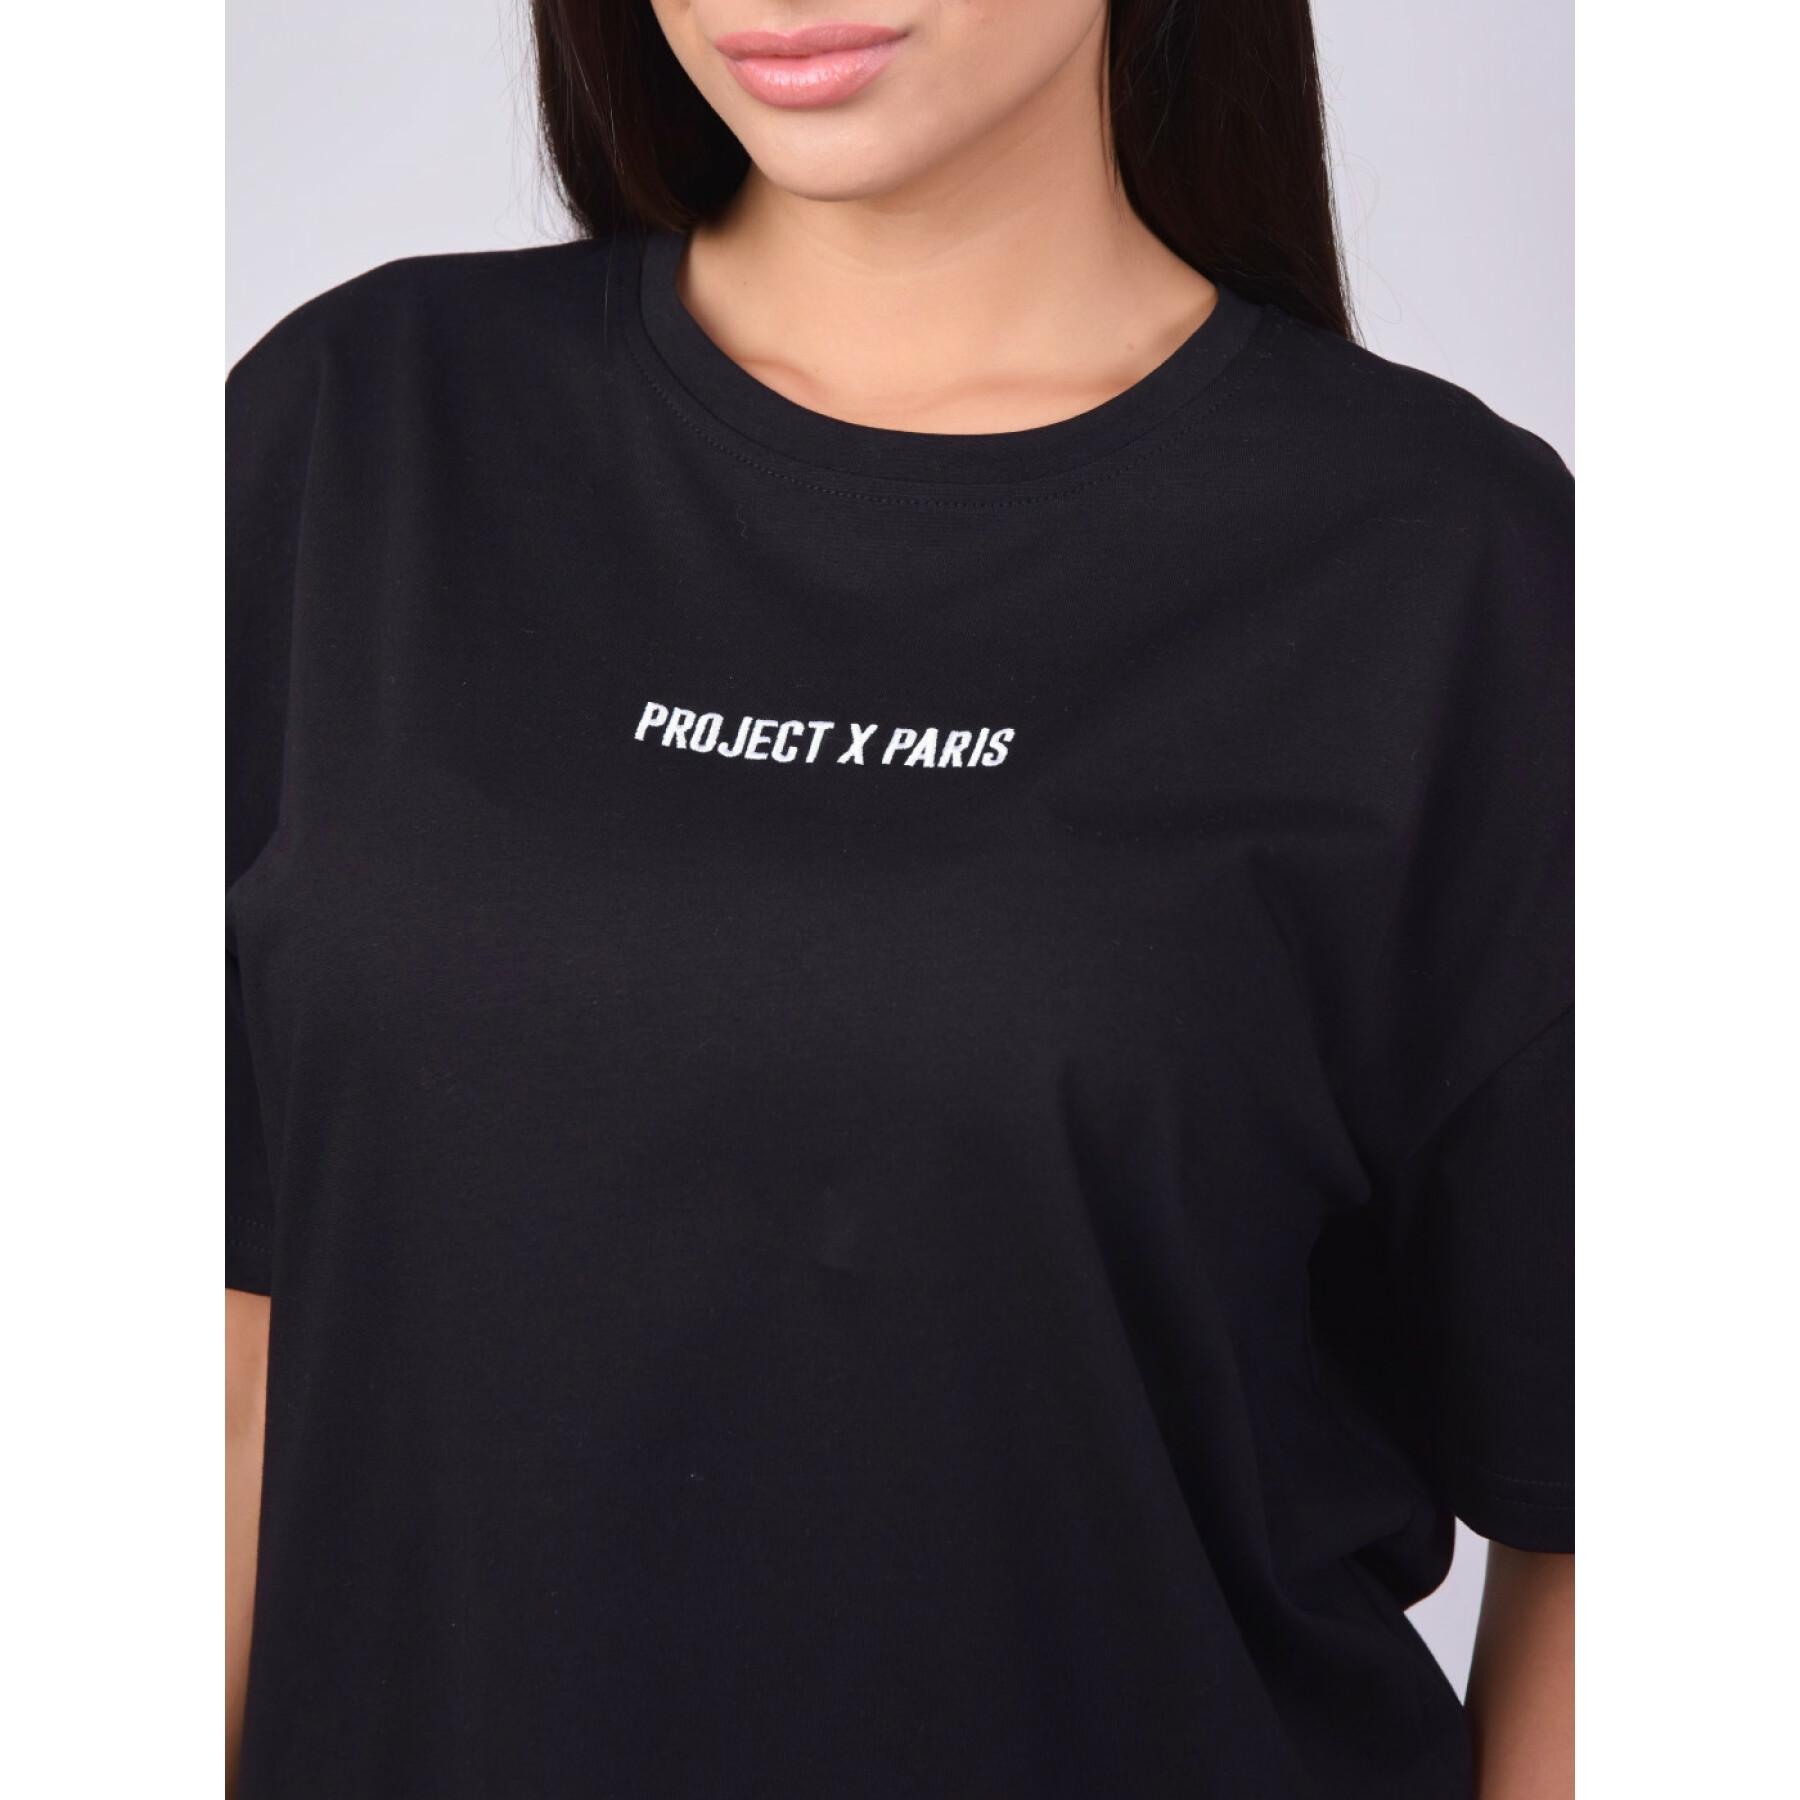 Women's loose T-shirt Project X Paris